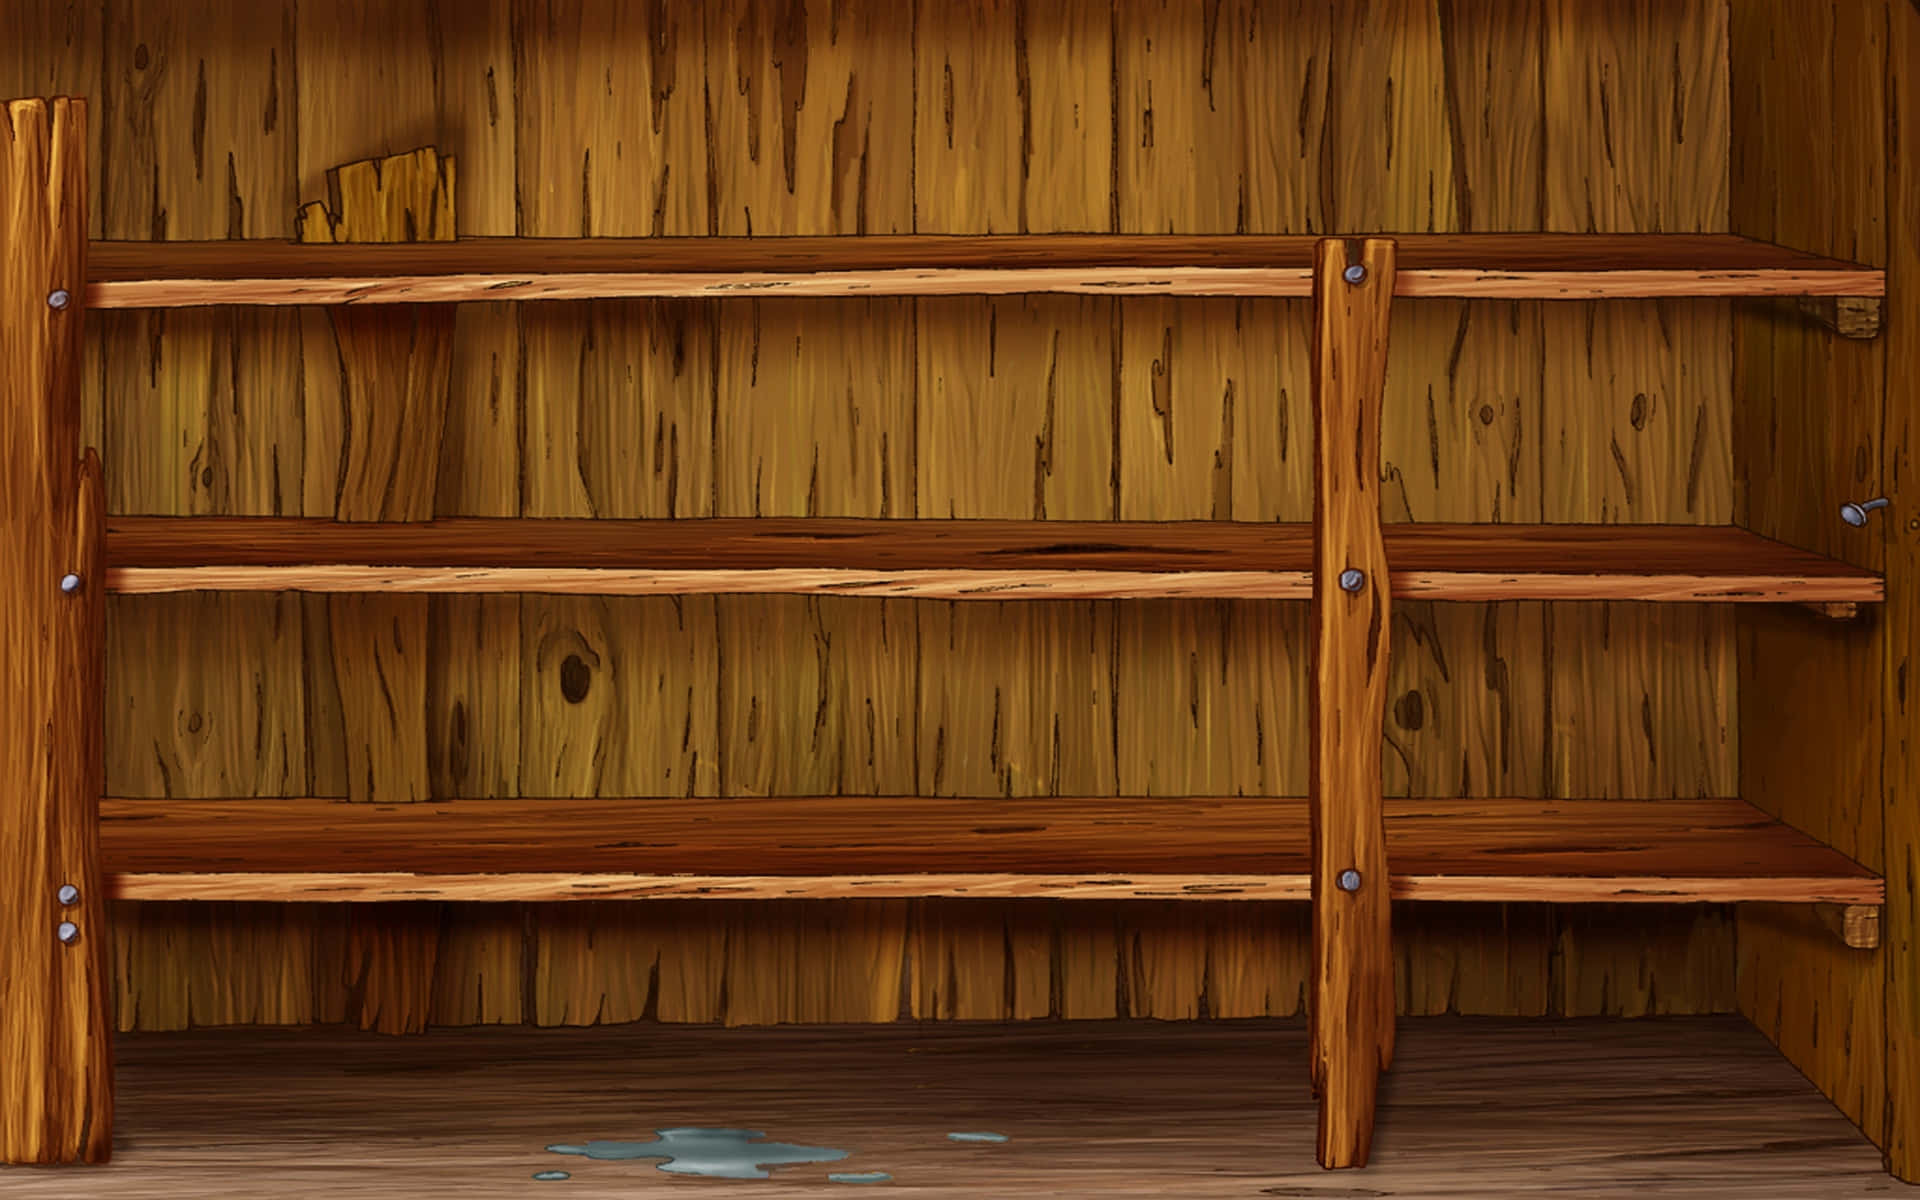 A Cartoon Shelf With A Wooden Shelf